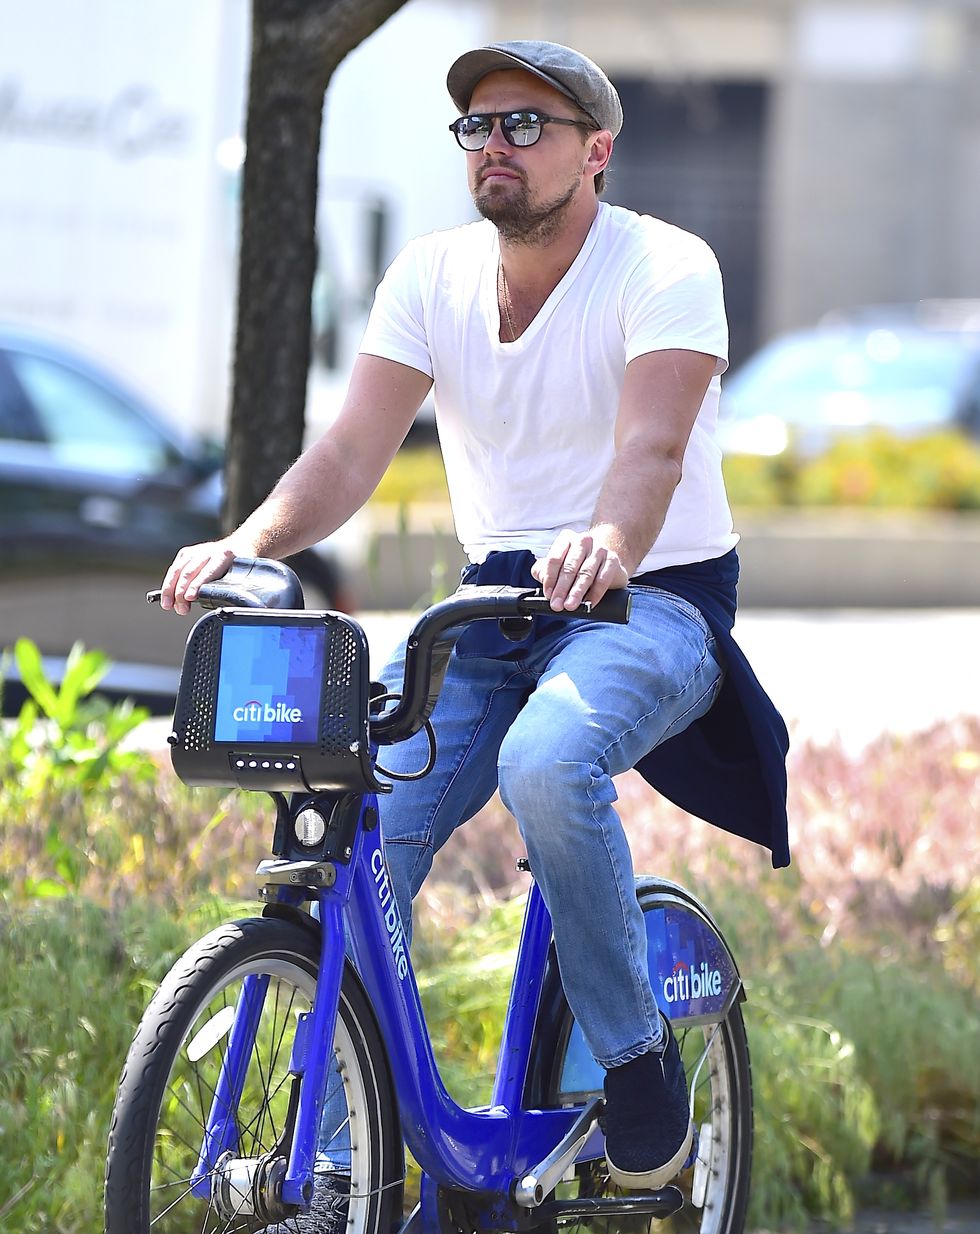 Leonardo DiCaprio Riding Bike